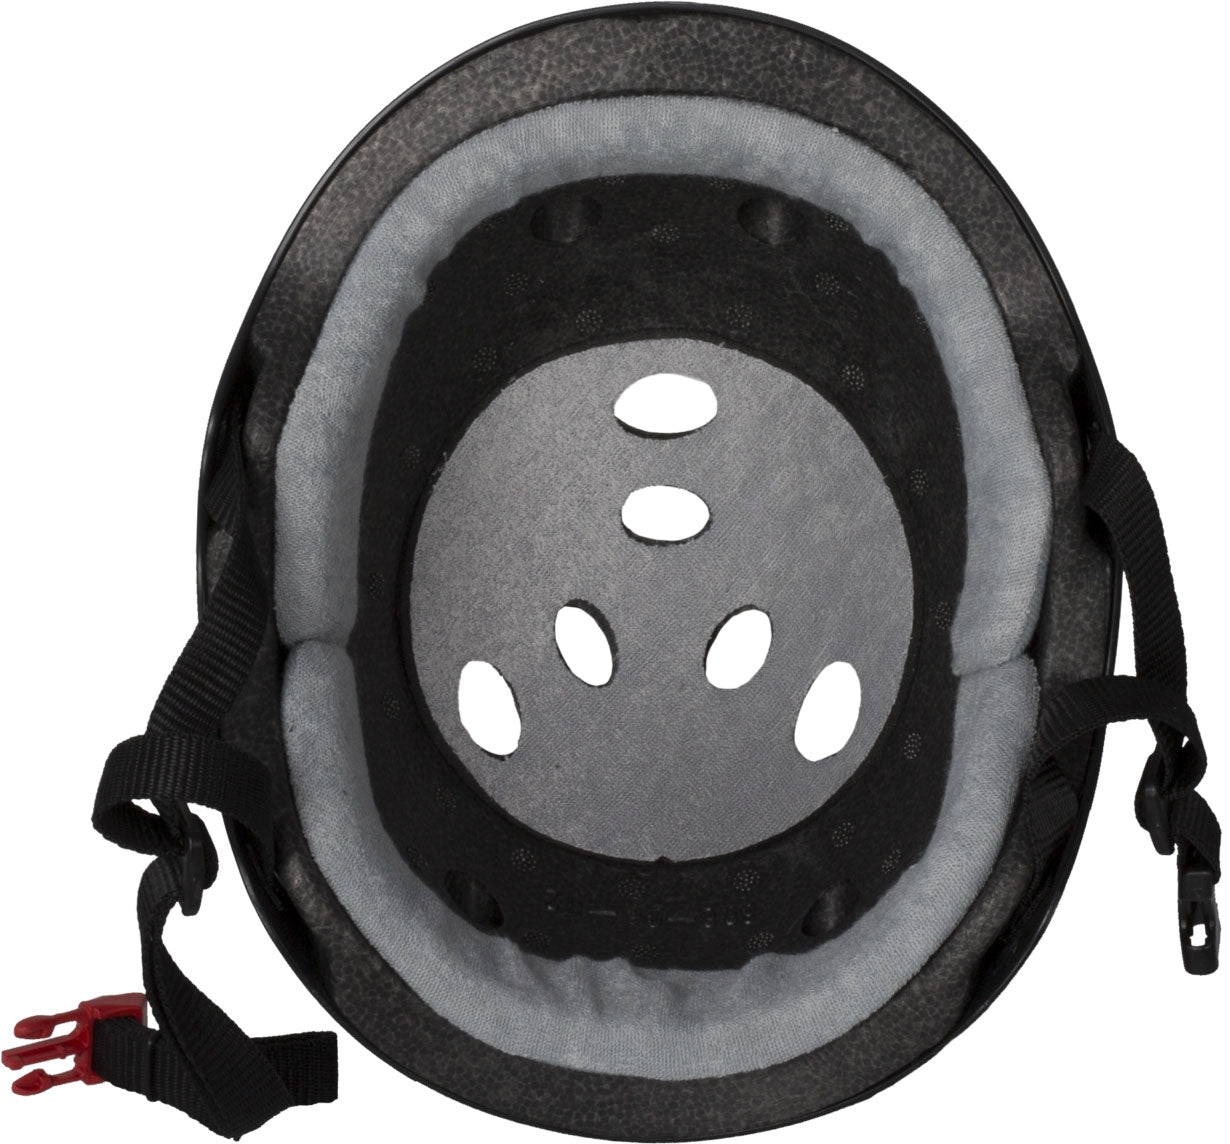 Triple 8 Certified Sweatsaver Skate Helmet - Rubber Mint - Inner